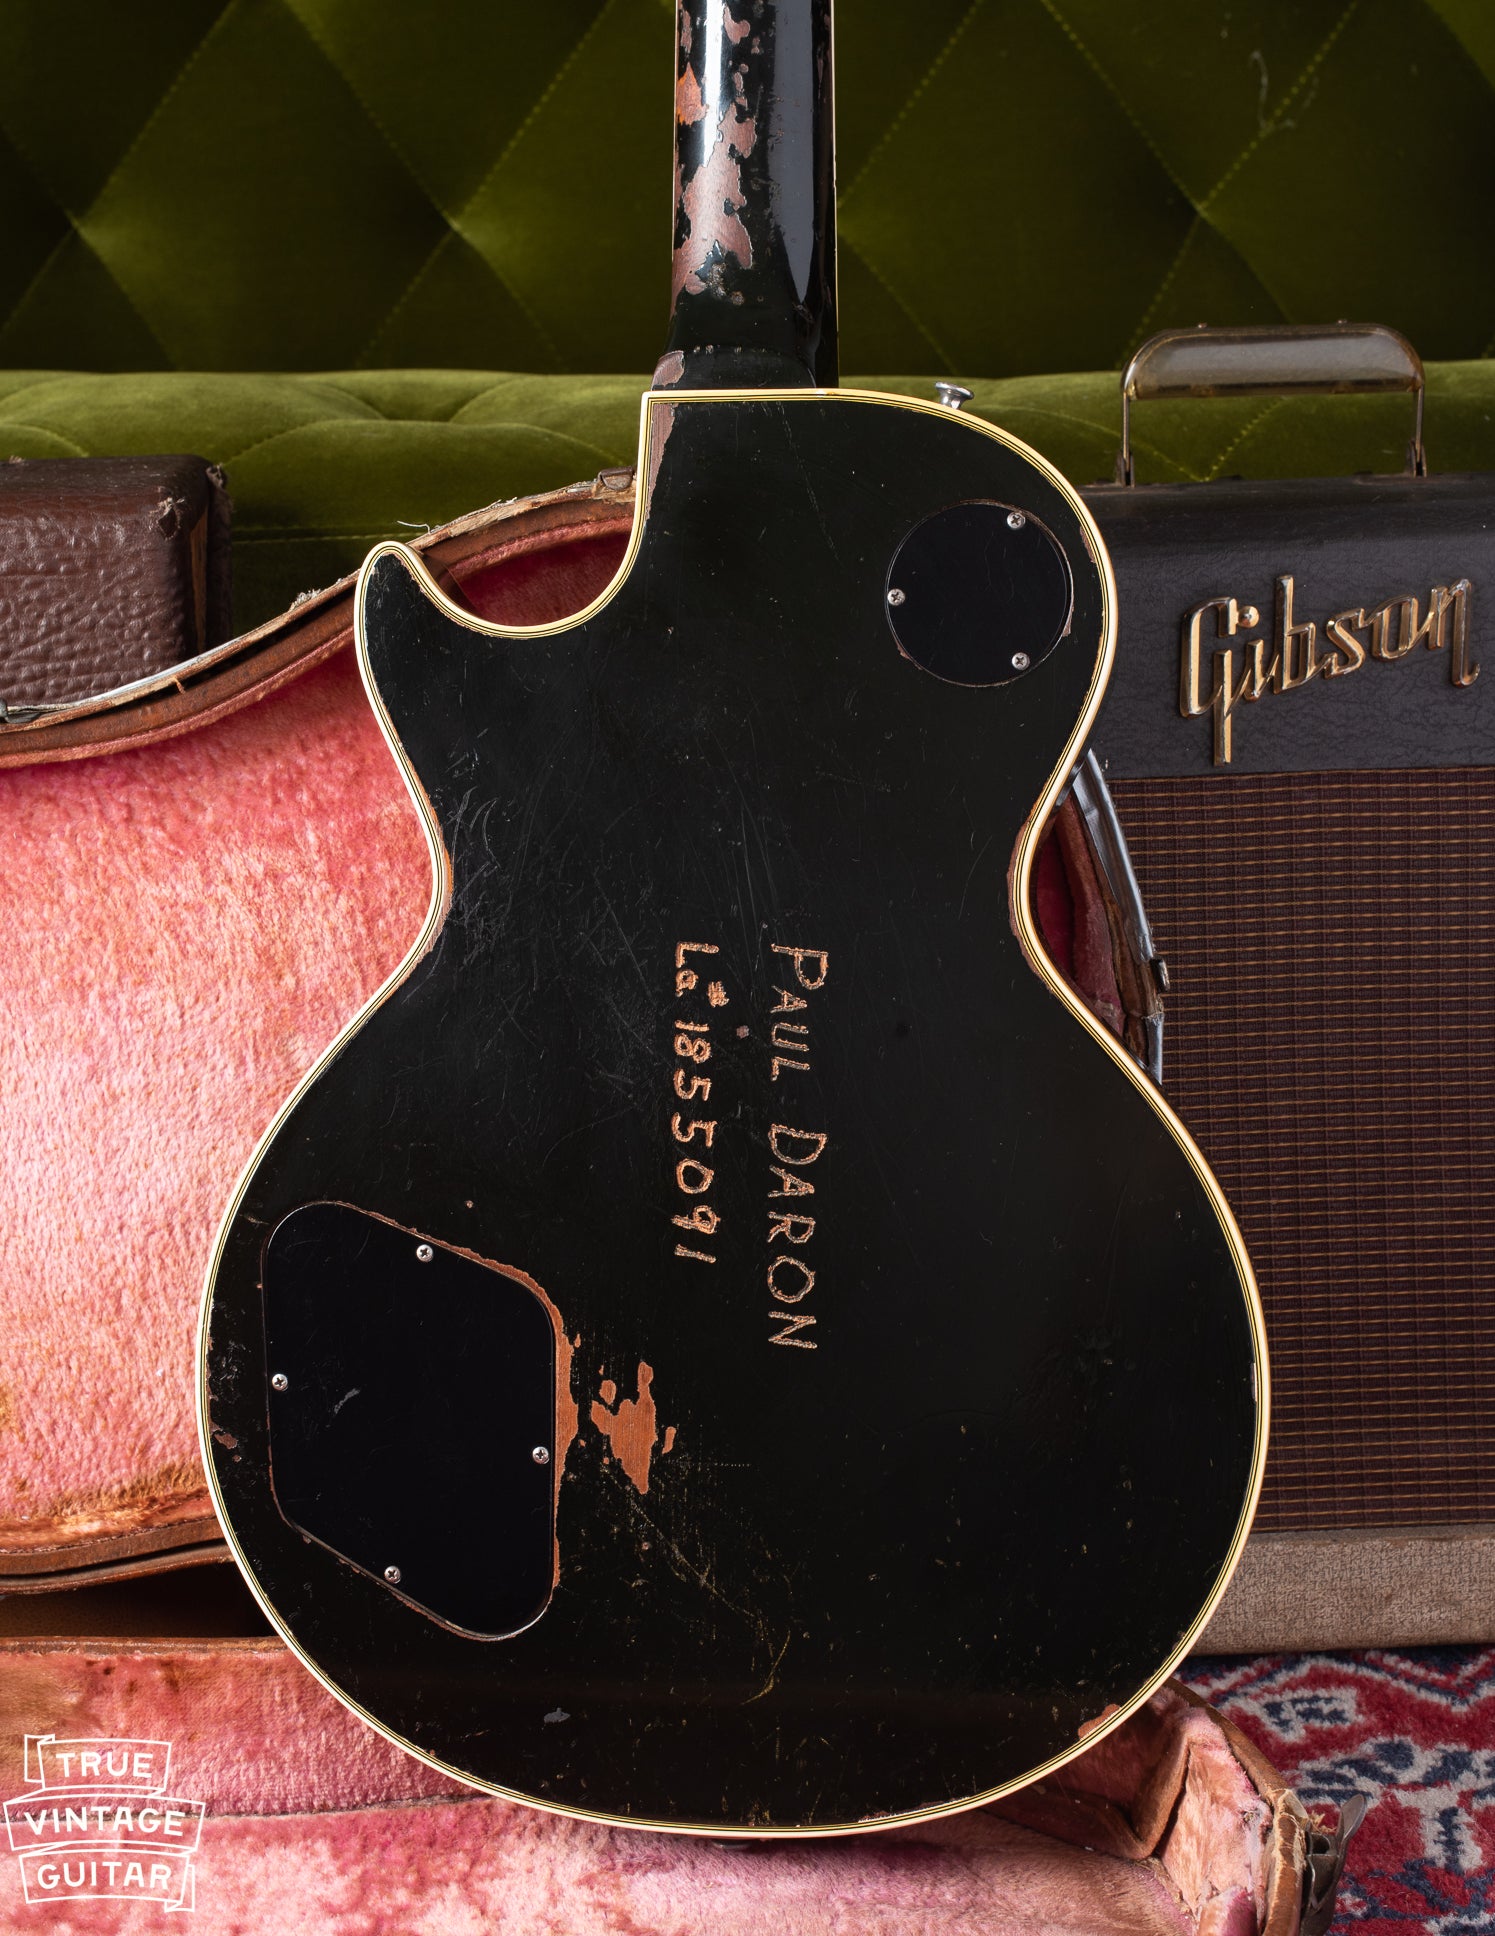 Back of body of Gibson Les Paul Custom 1960